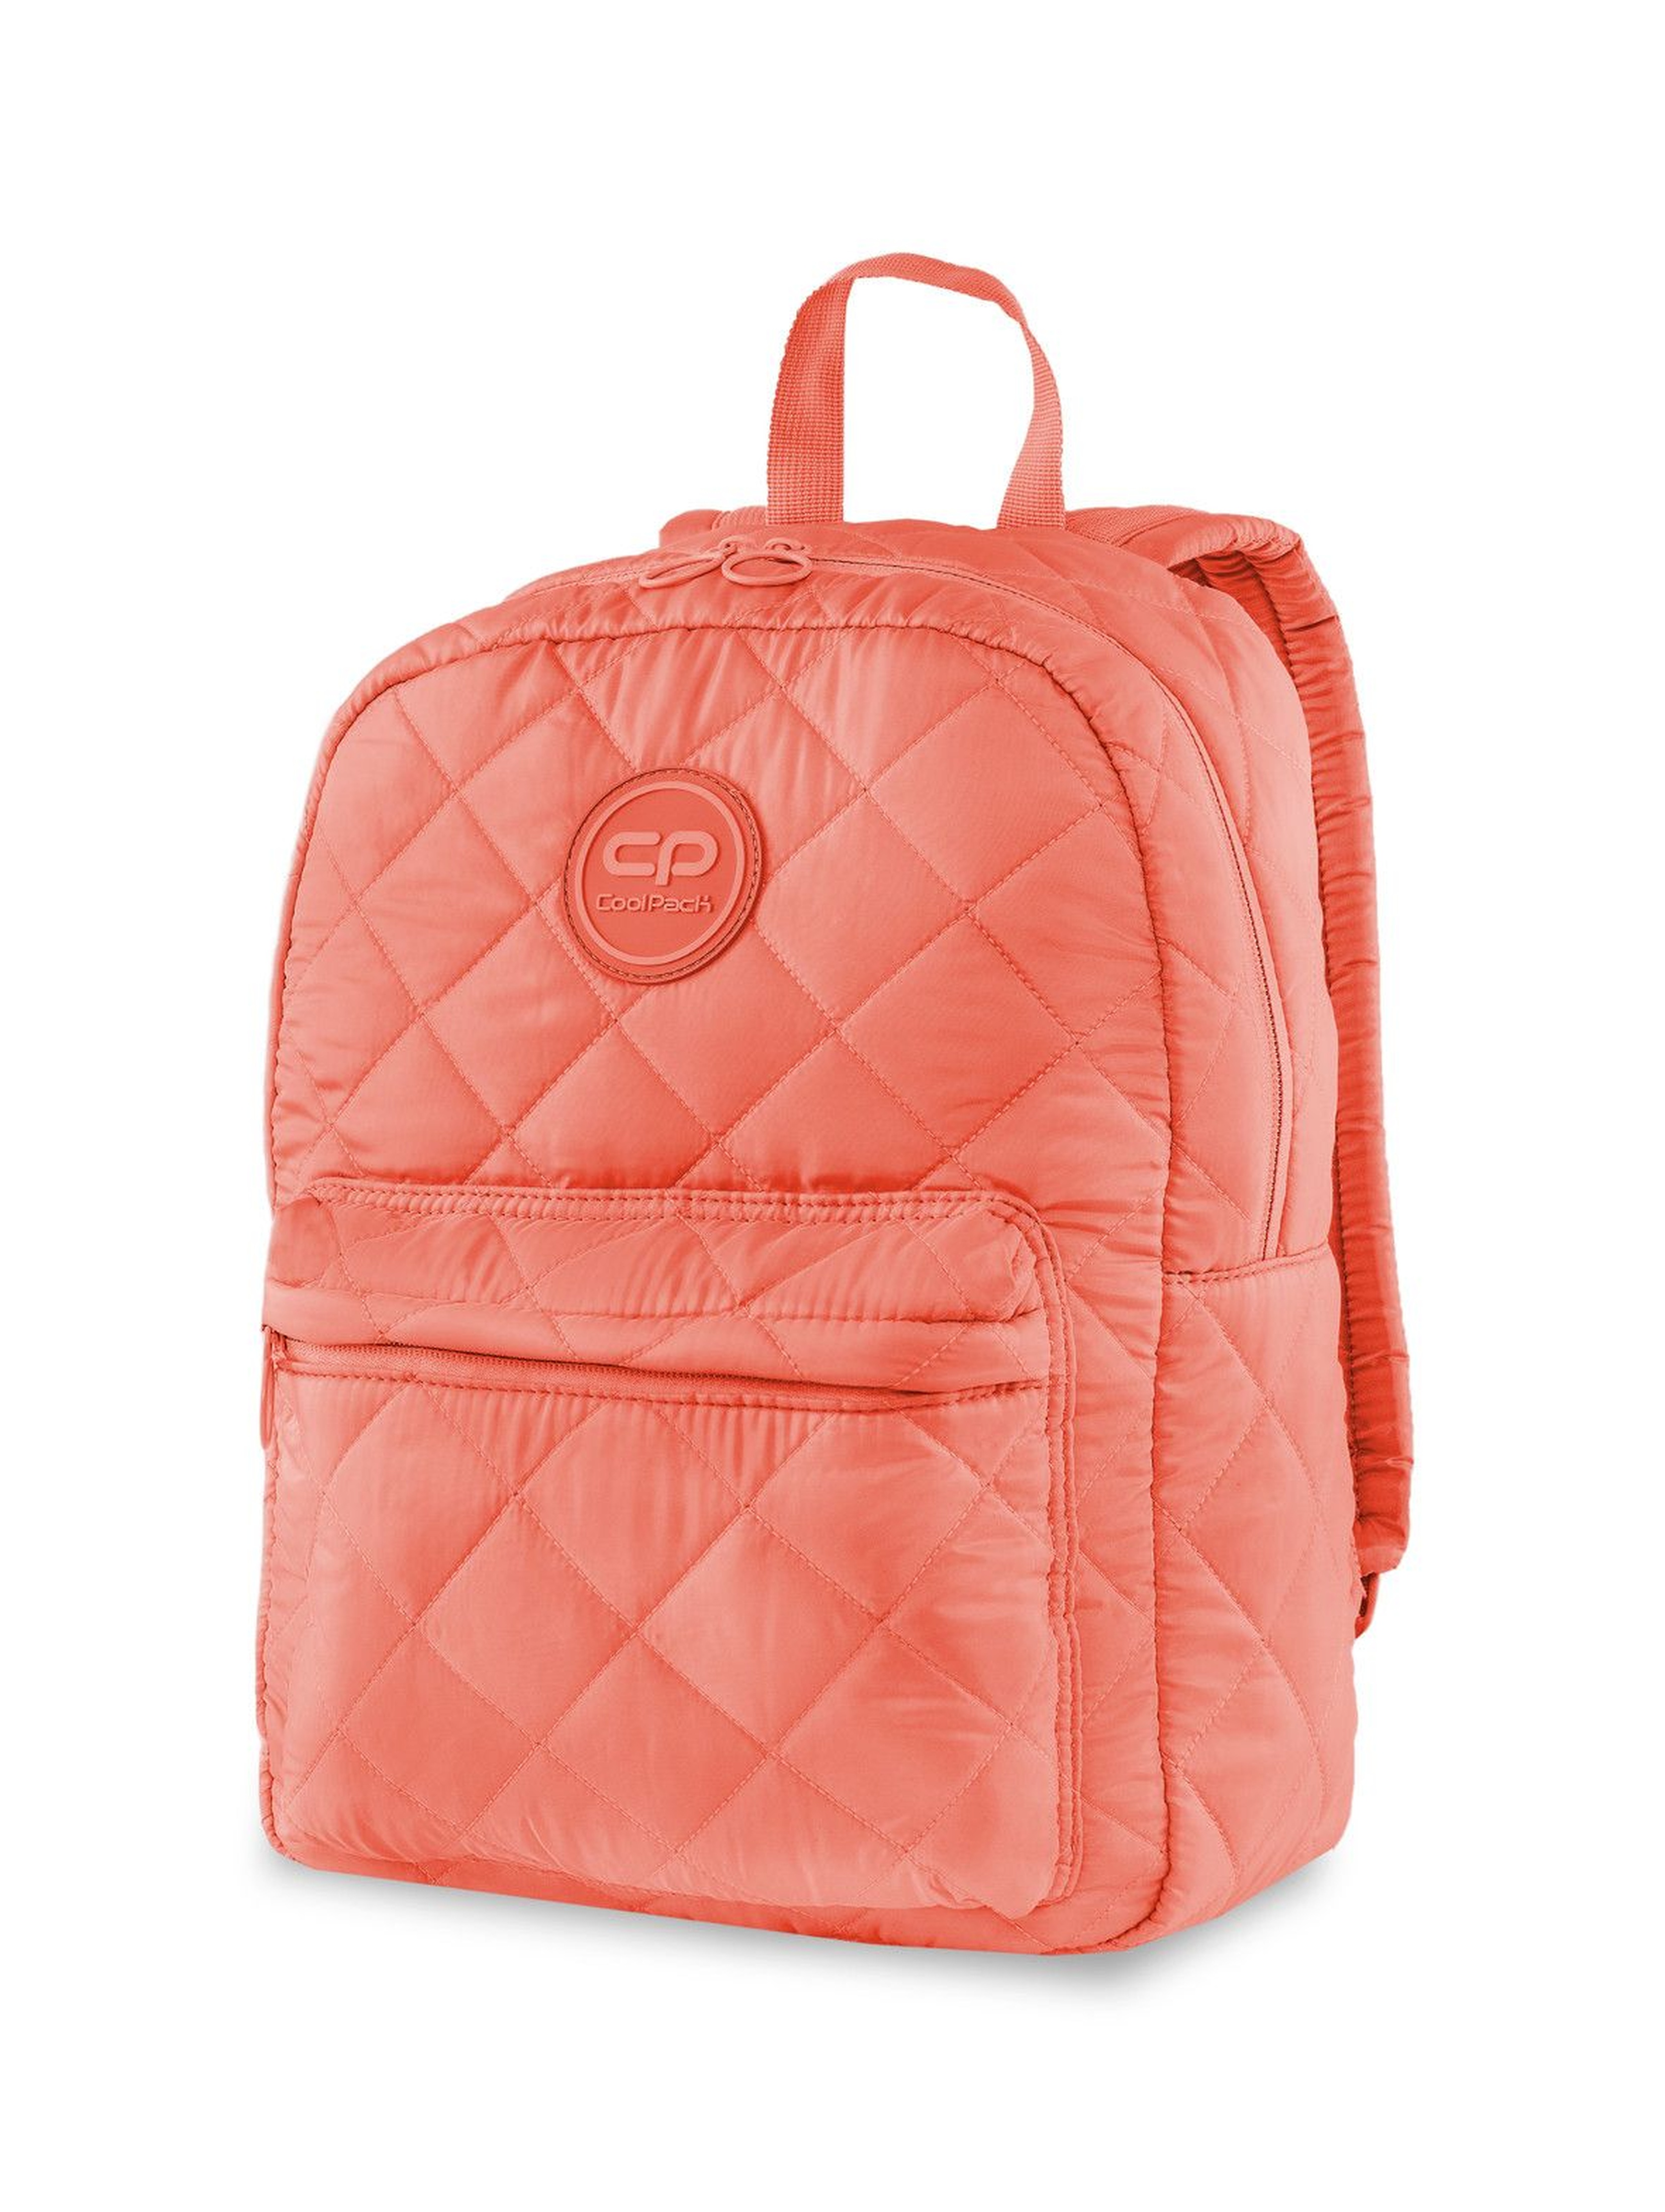 Plecak Ruby Peach Mallow- brzoskwiniowy pikowany